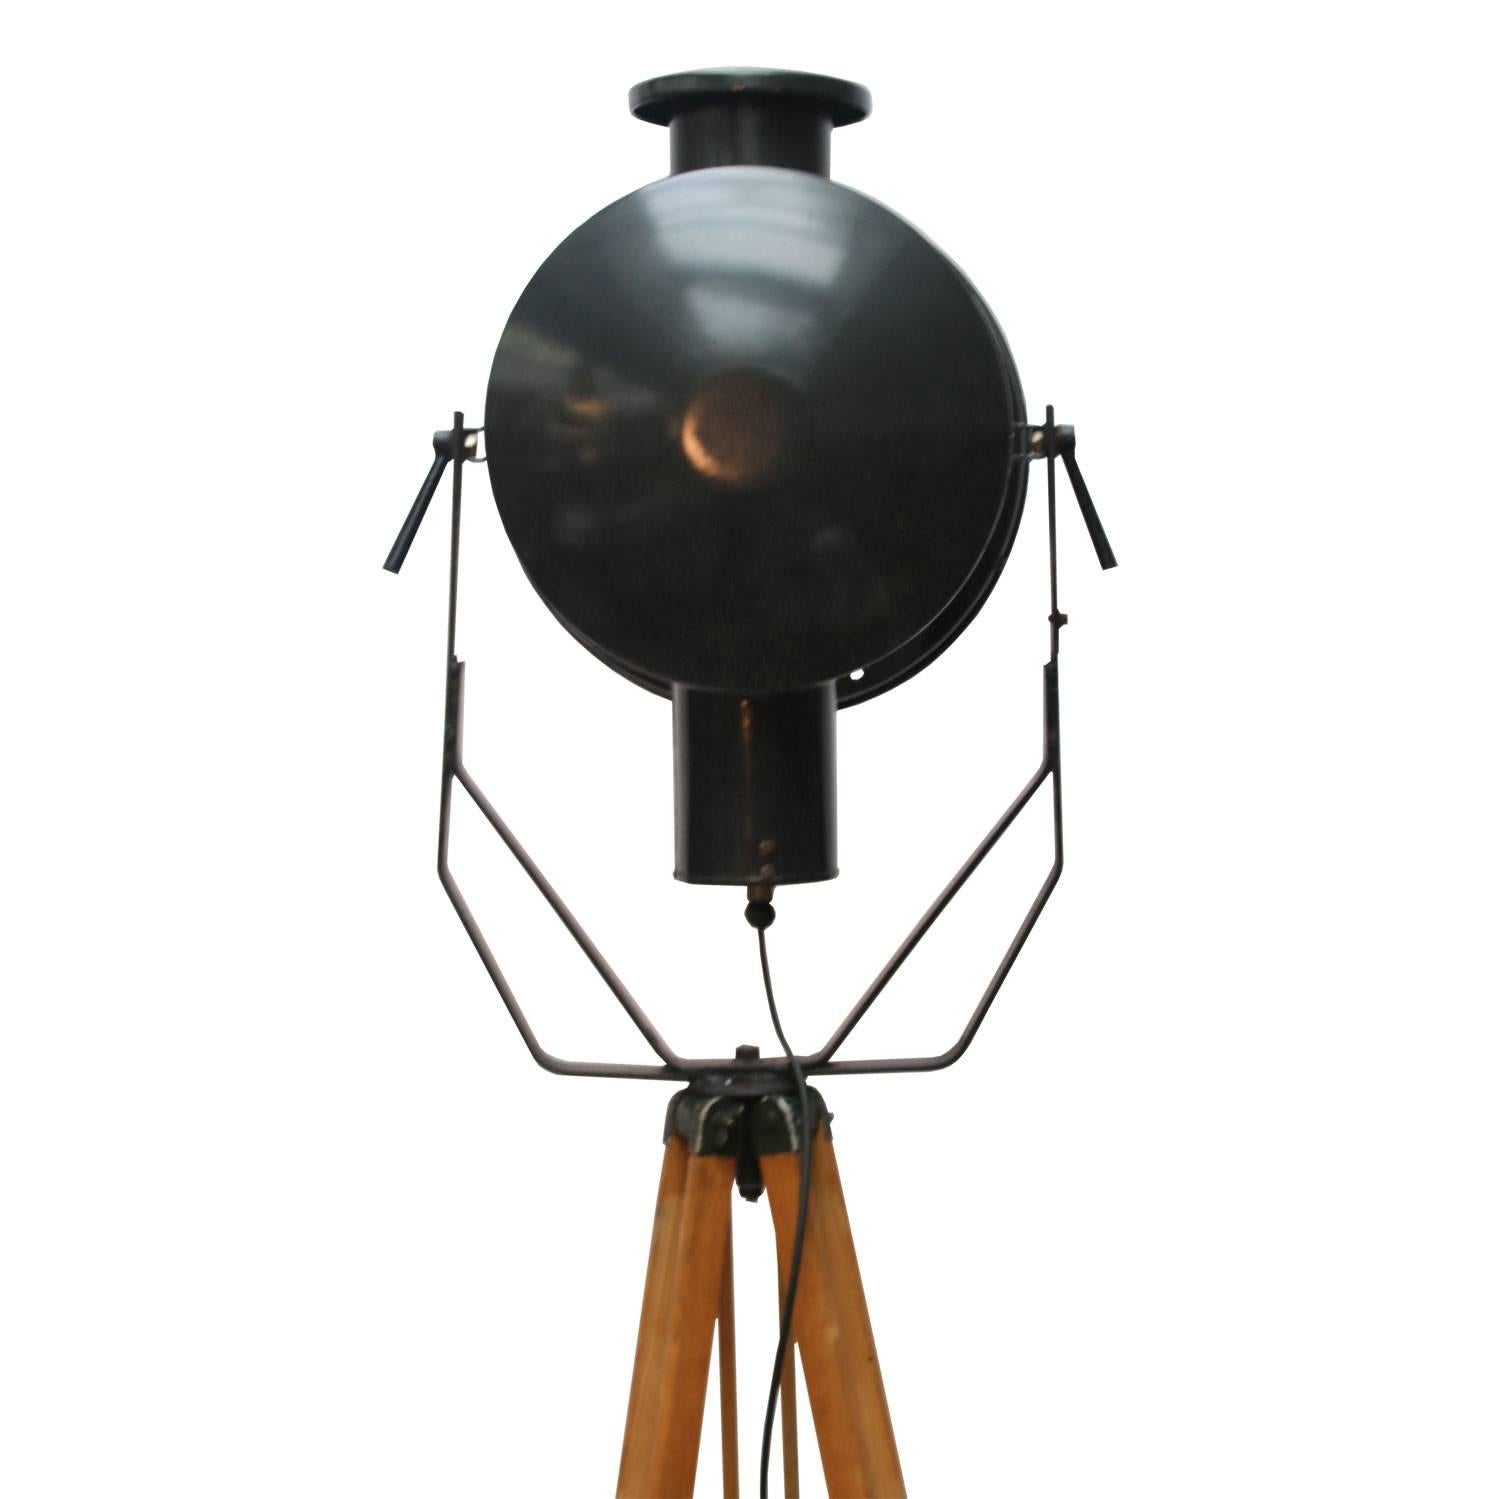 Czech Wooden Tripod Floor Lamp Black Enamel Industrial Spot Light